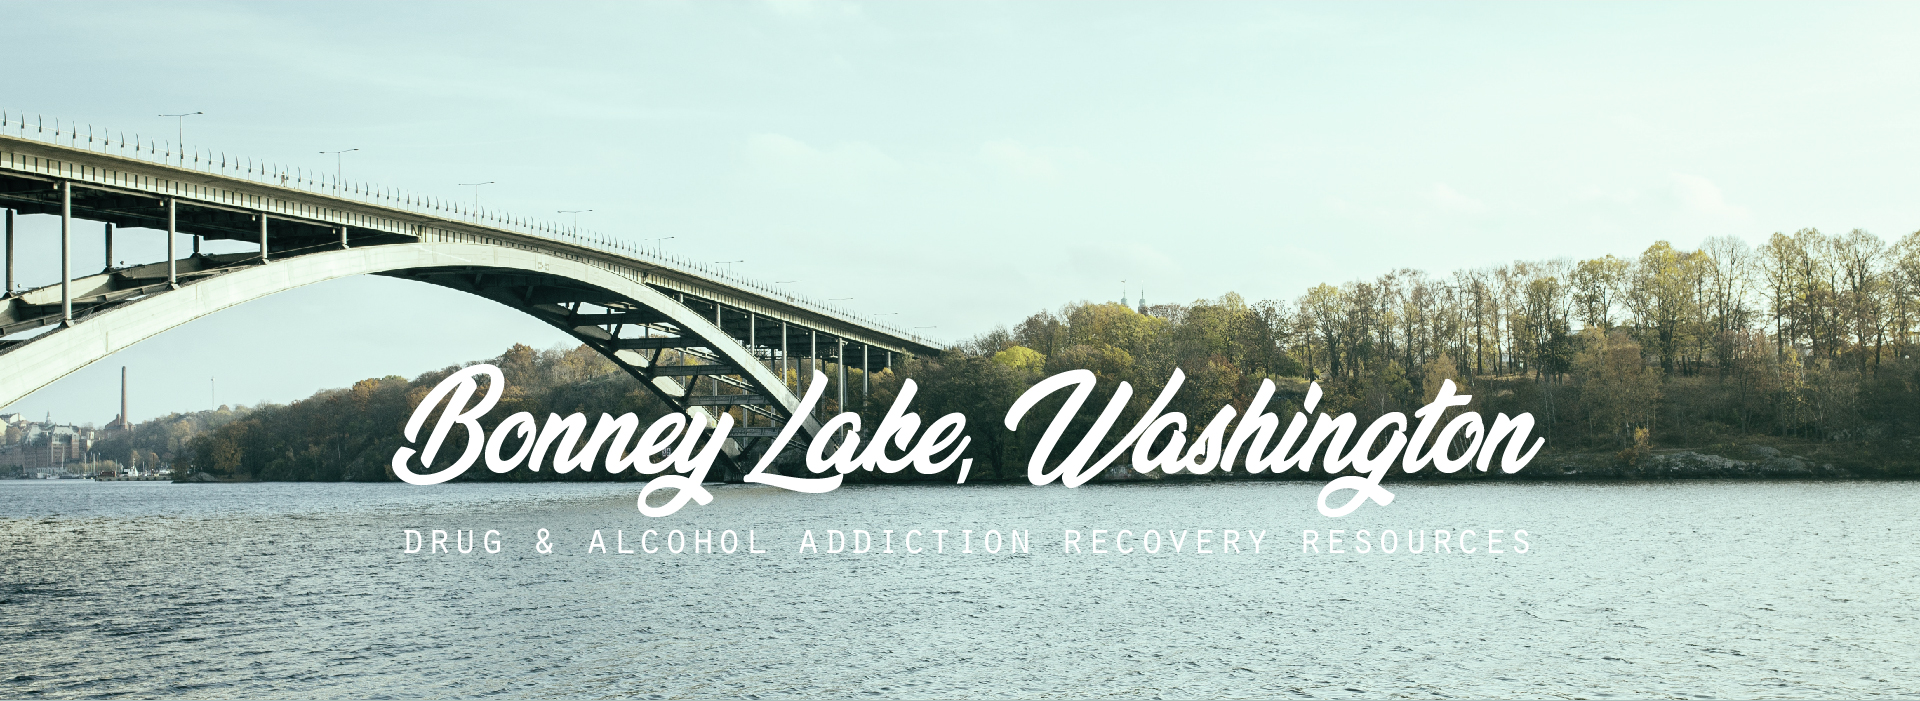 Bonney Lake, Washington addiction resources